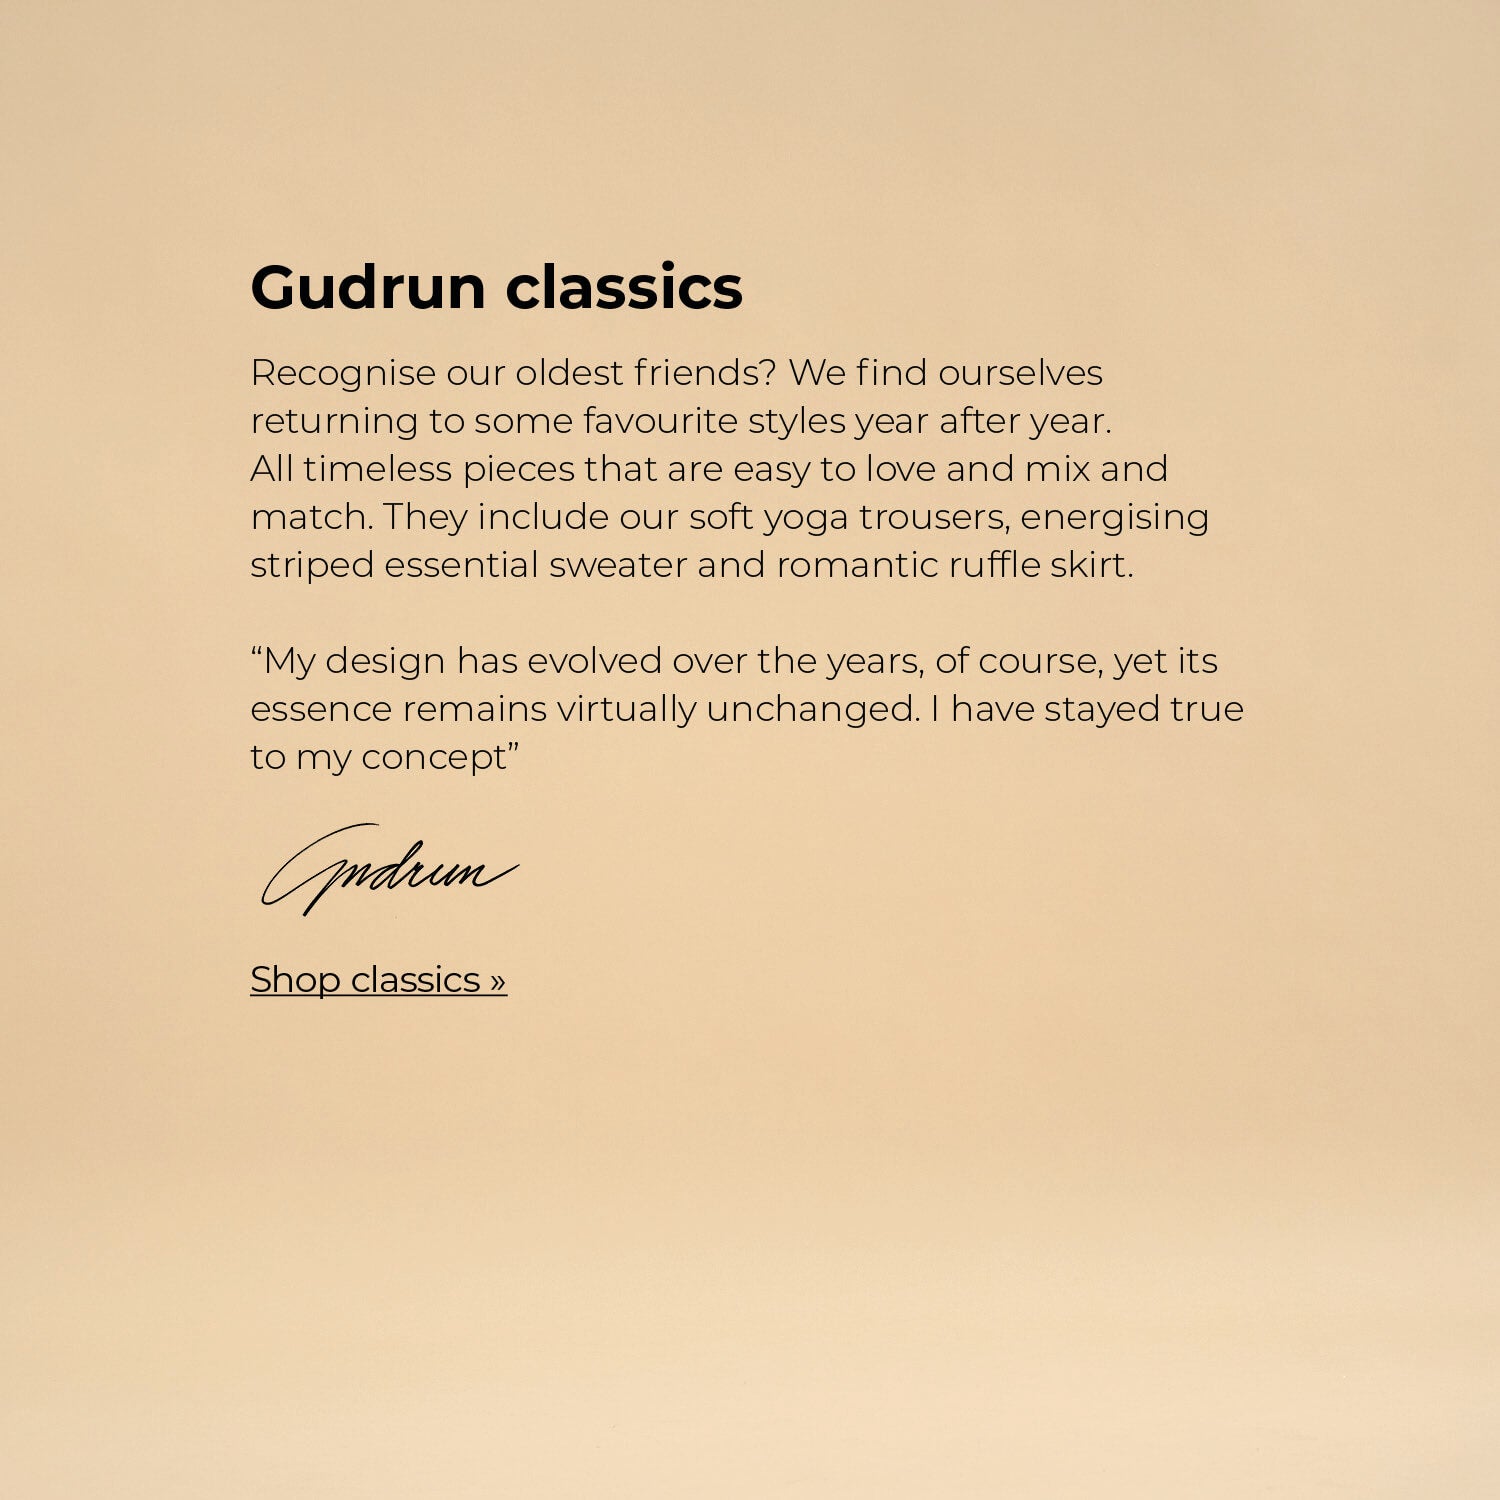 Our most faithful companions – the Gudrun classics.